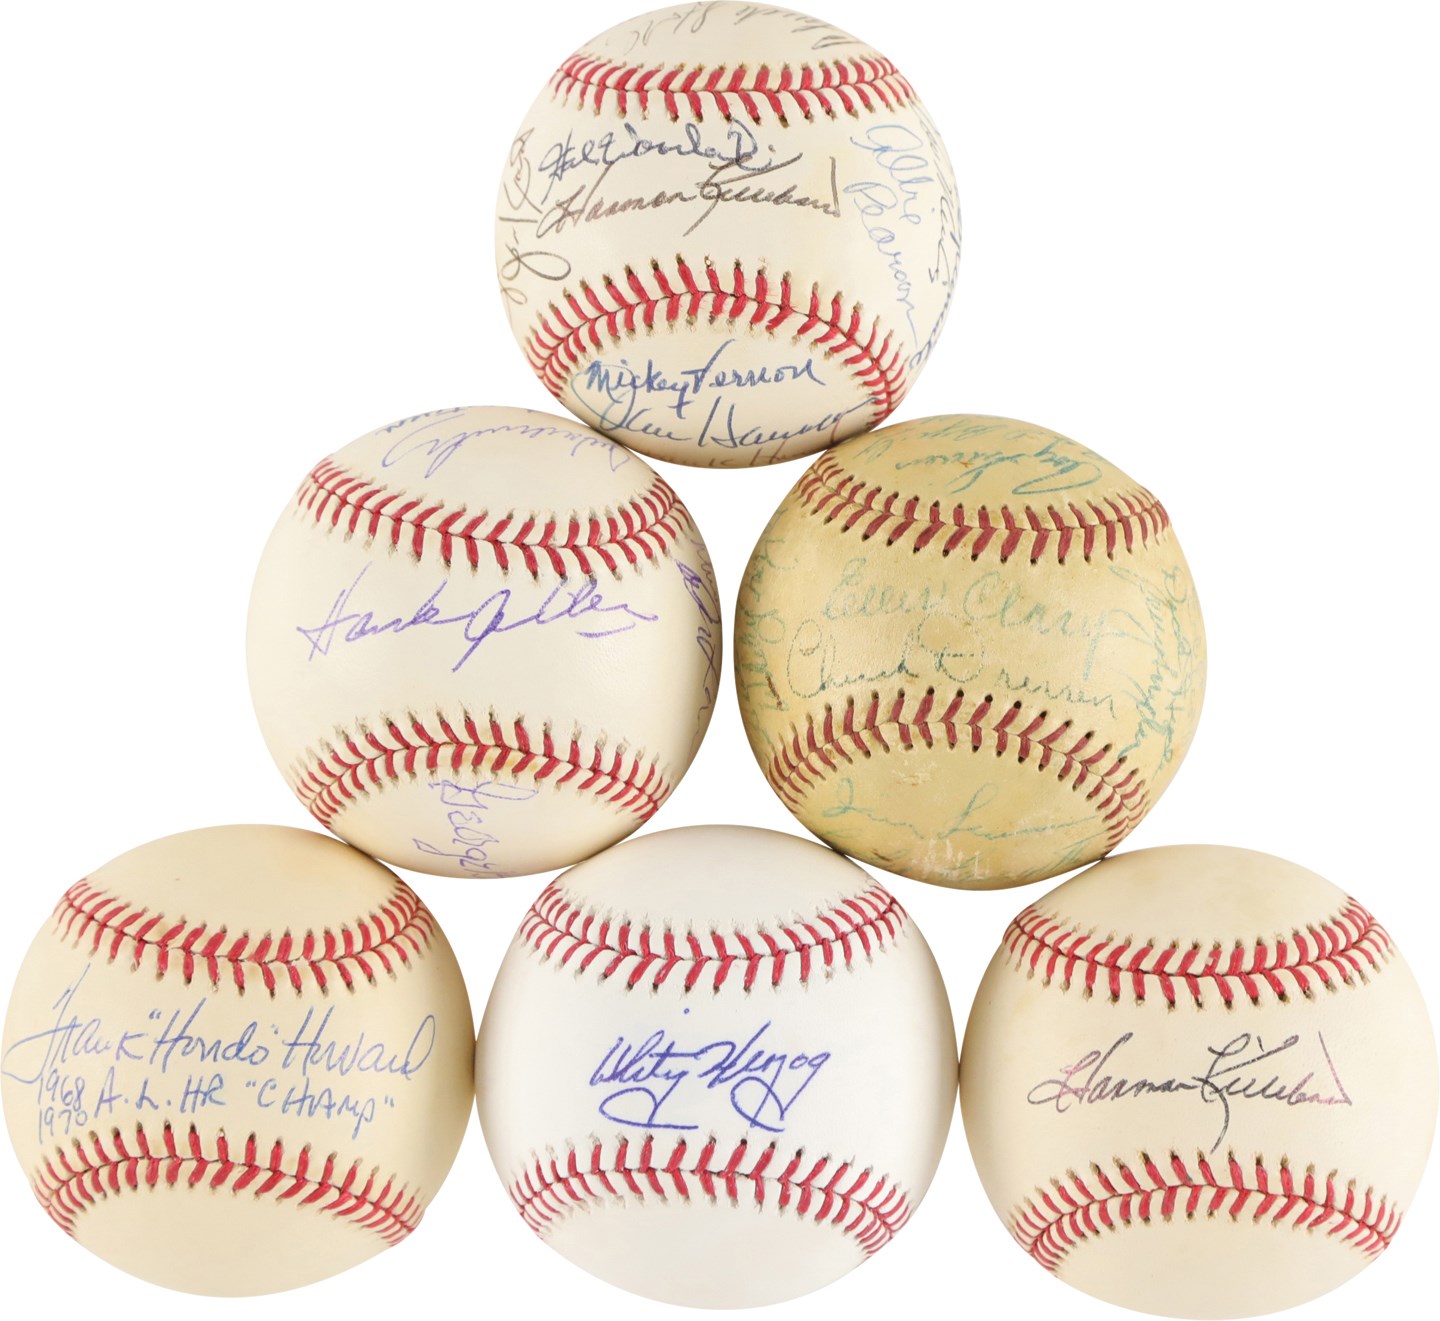 - Washington Senators Greats Signed Baseball Collection (32)